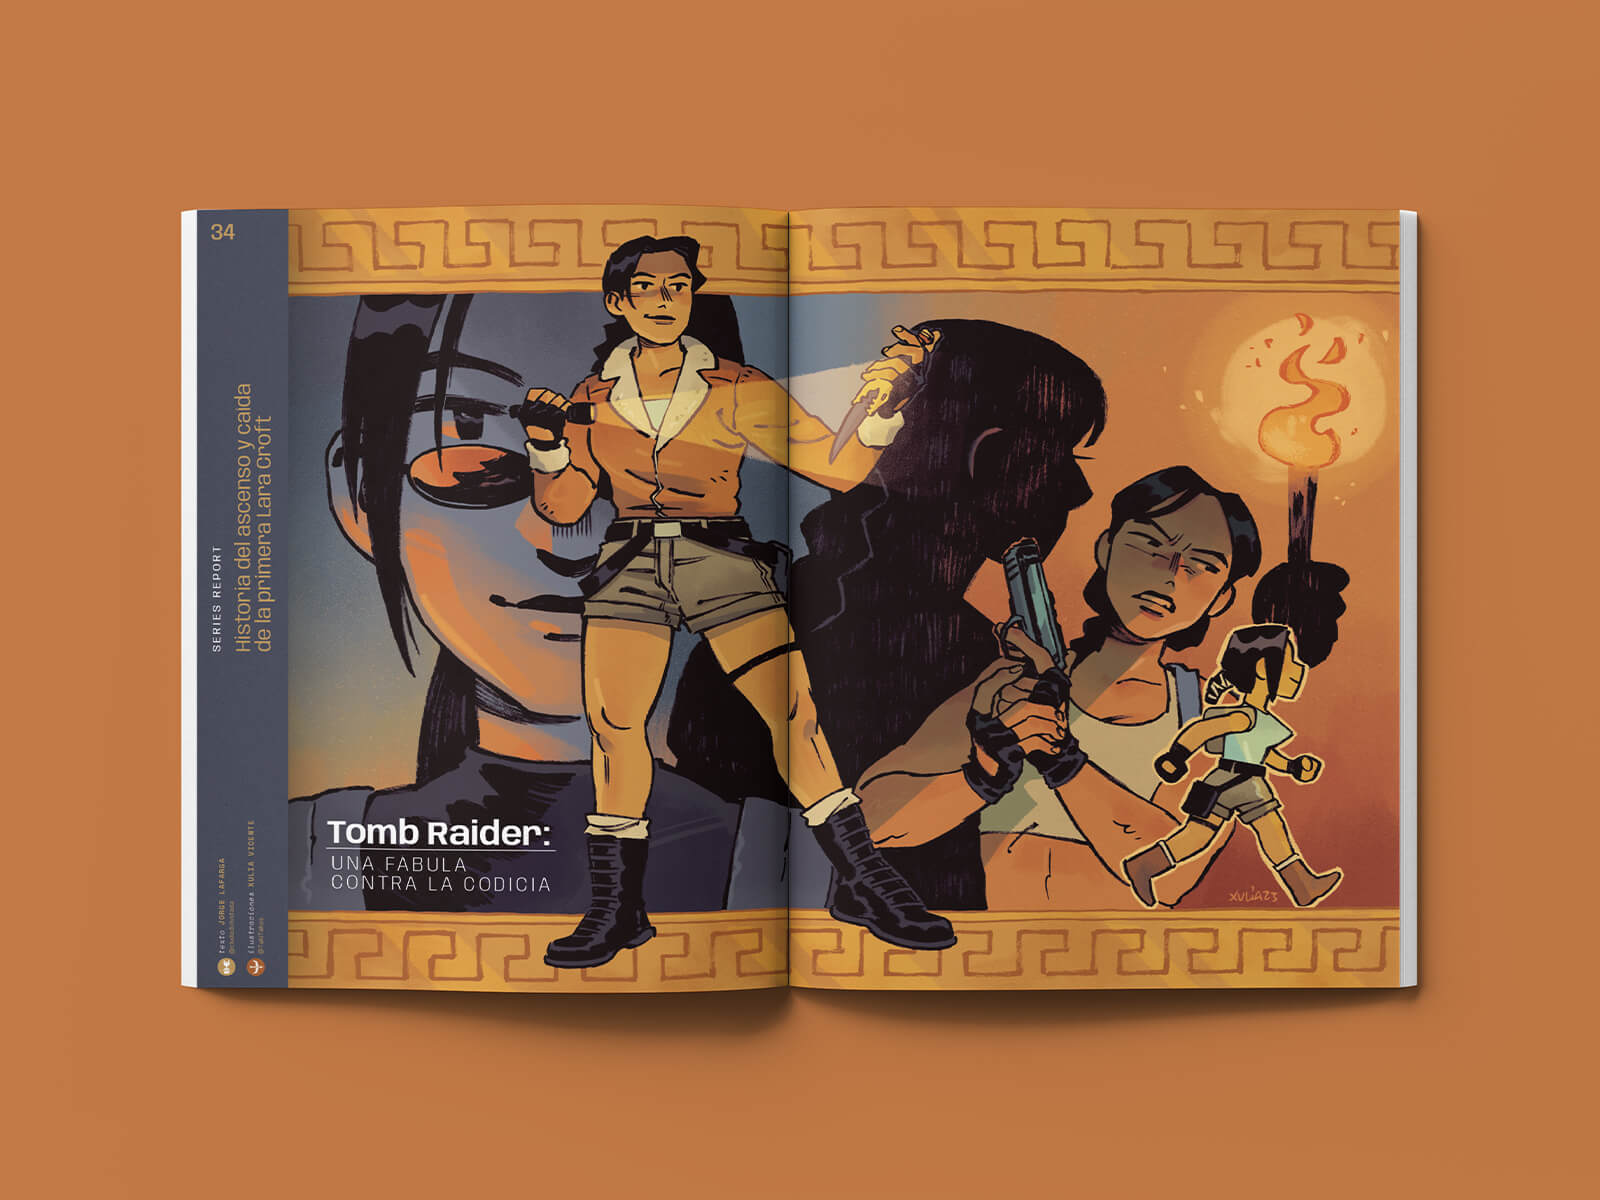 Revista de videojuegos LOOP - Tomb Raider